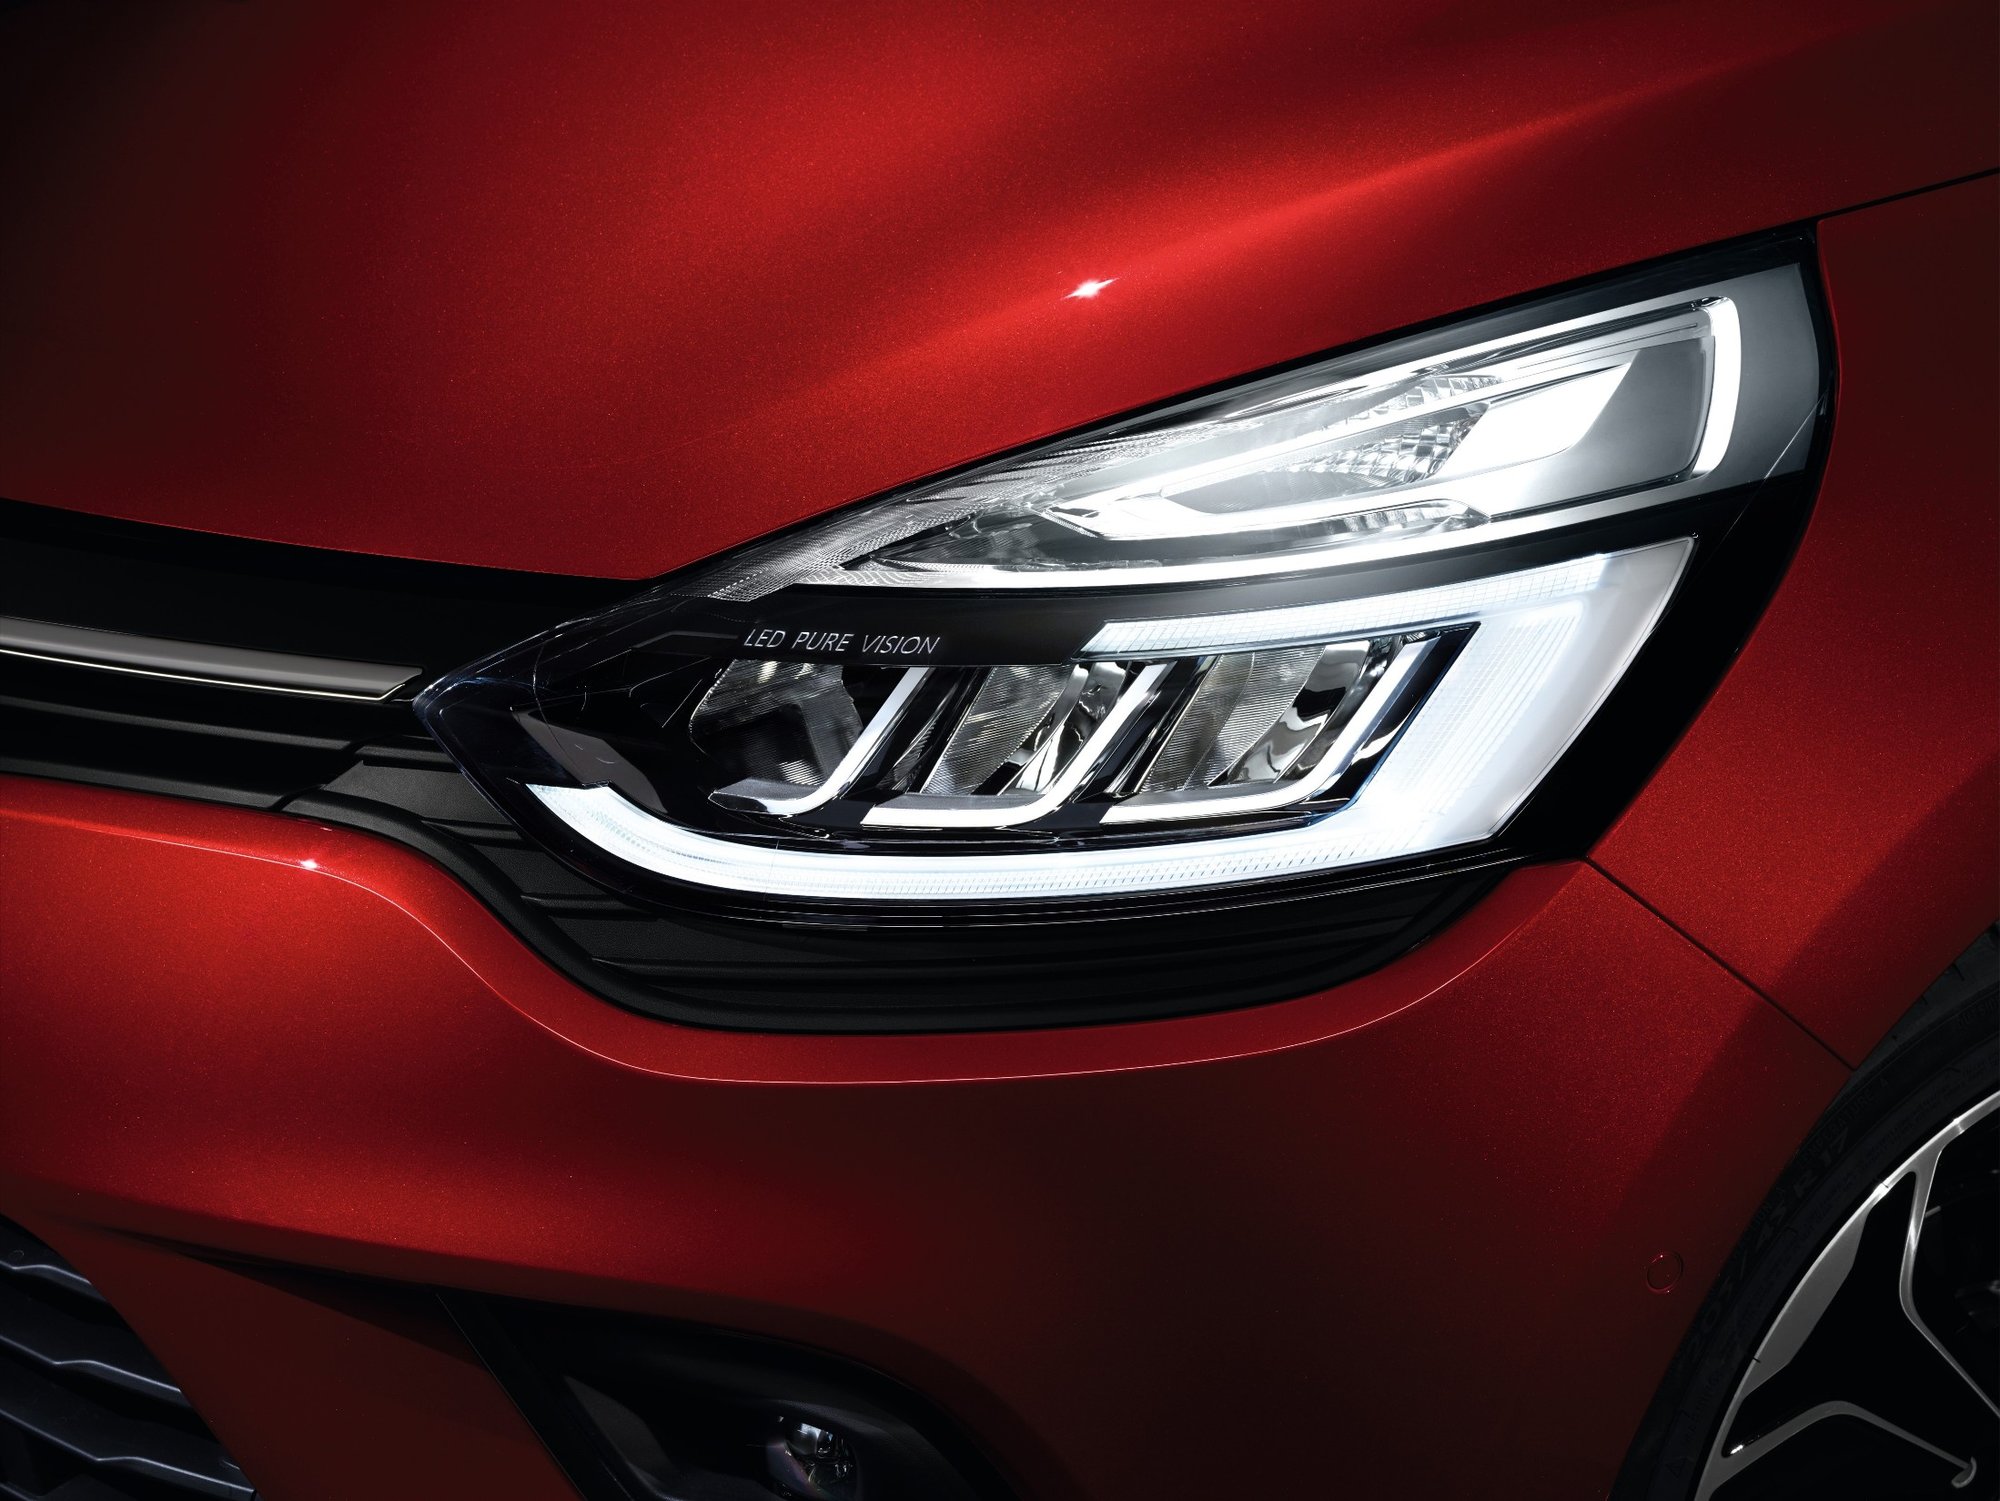 Renault Clio dostal s aktuálním faceliftem světla LED Pure Vision a kvalitnější materiály.